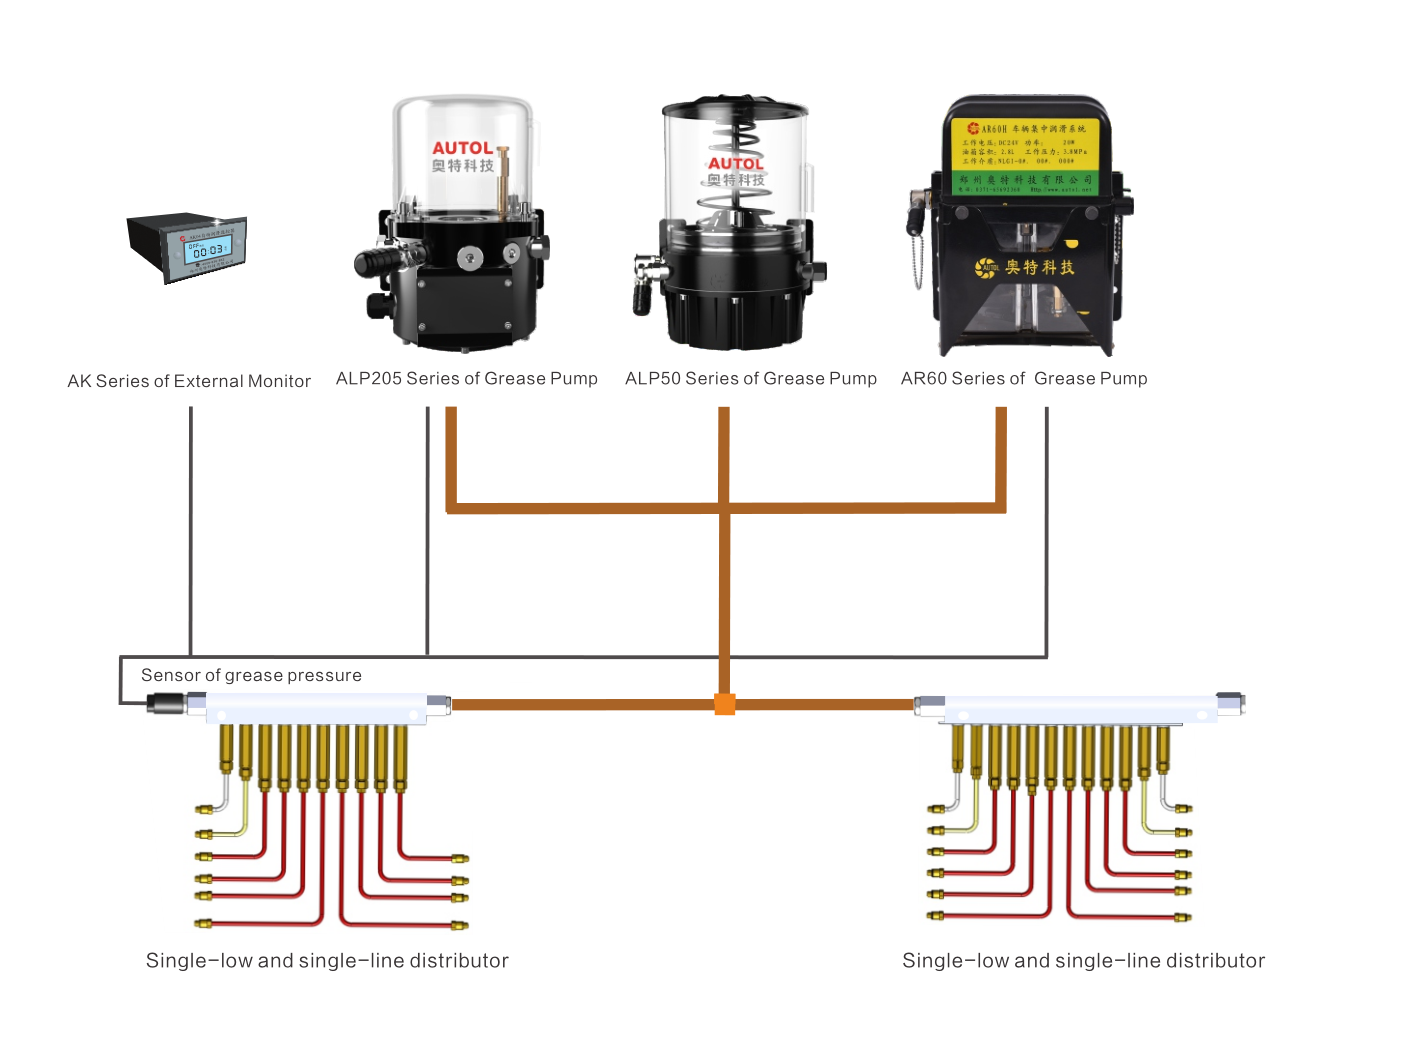 Sistema de lubricación centralizado de una sola fila y una sola línea (CLS)